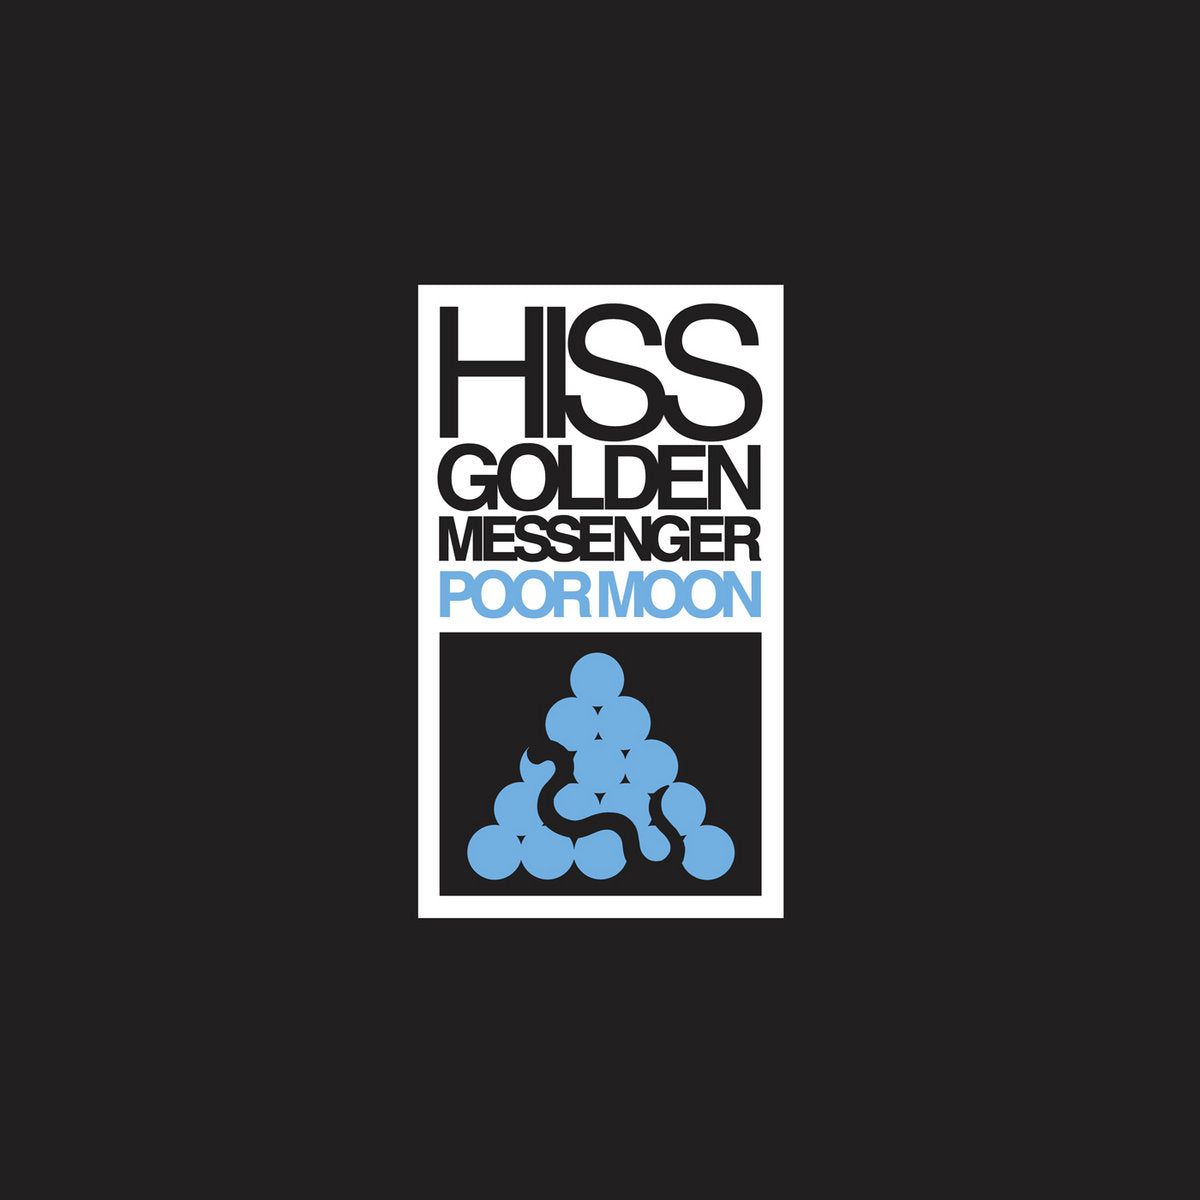 Hiss Golden Messenger - Poor Moon (Remastered) LP